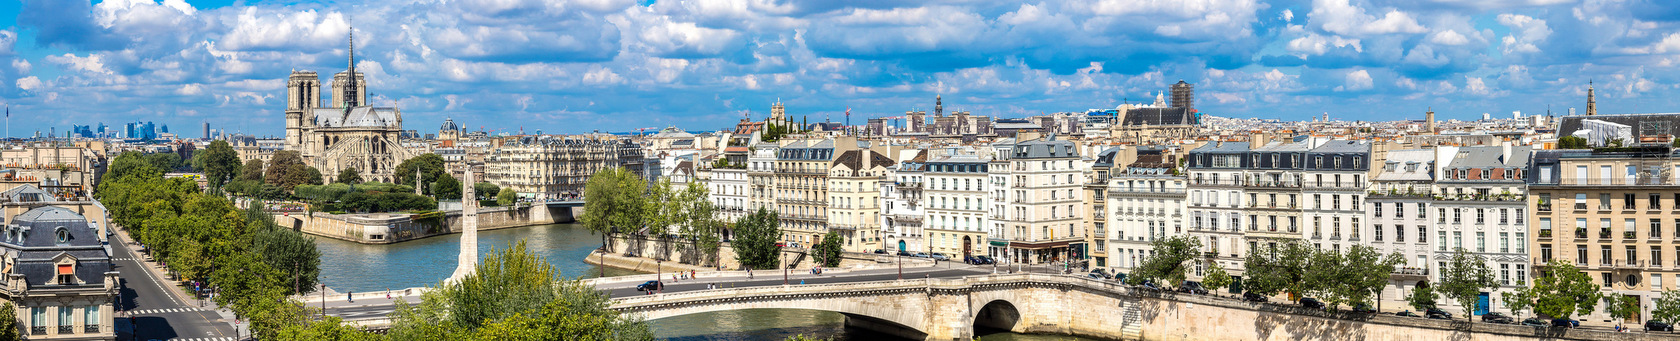 Paryż - fascynujące miasto do uczenia się języka francuskiego